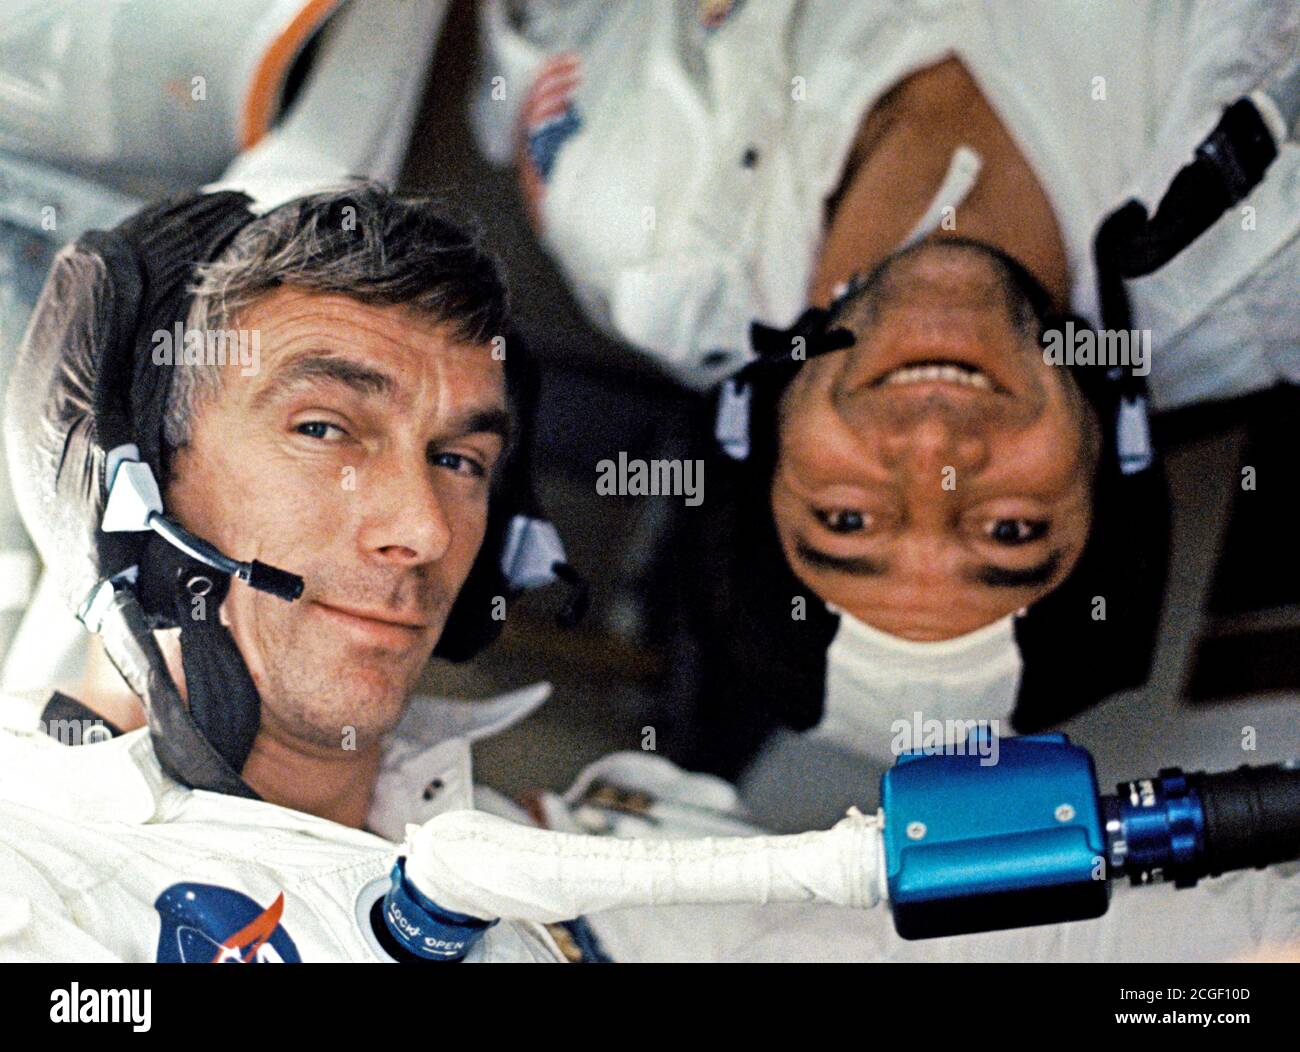 (7-19 Dez. 1972)------- Wissenschaftler - Astronaut Harrison H. 'Jack' Schmitt, Lunar Module Pilot, nahm dieses Foto von seinen beiden Kollegen crew Männer unter Bedingungen der Schwerelosigkeit an Bord der Apollo 17 Satelliten während der letzten Mondlandung Mission der NASA Apollo Programm. Stockfoto